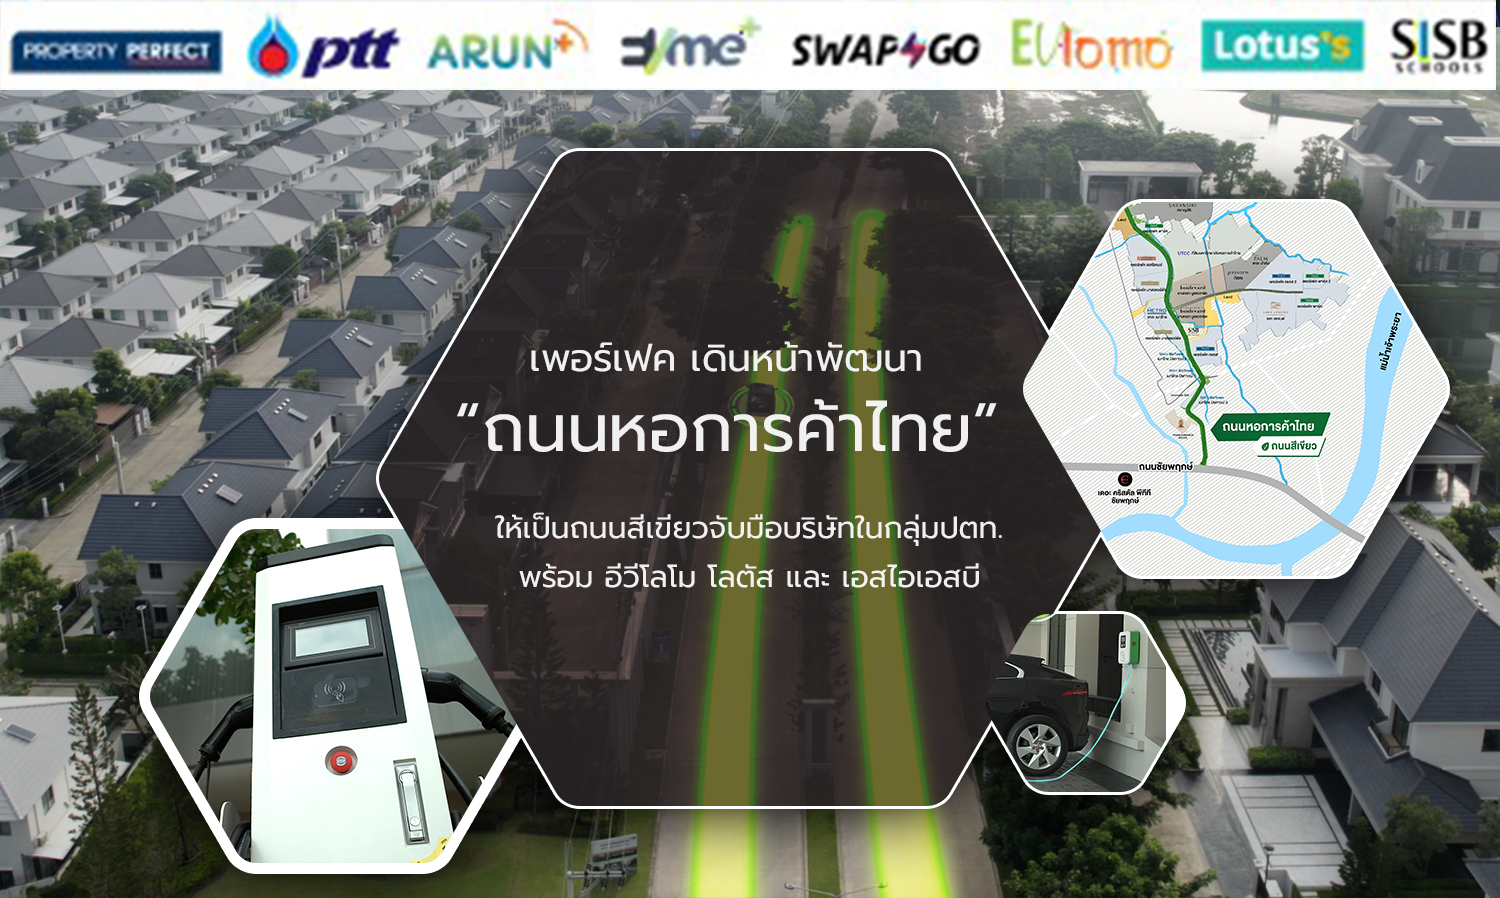 เพอร์เฟค เดินหน้าพัฒนา “ถนนหอการค้าไทย” ให้เป็นถนนสีเขียวจับมือบริษัทในกลุ่มปตท. พร้อม อีวีโลโม โลตัส และ เอสไอเอสบี